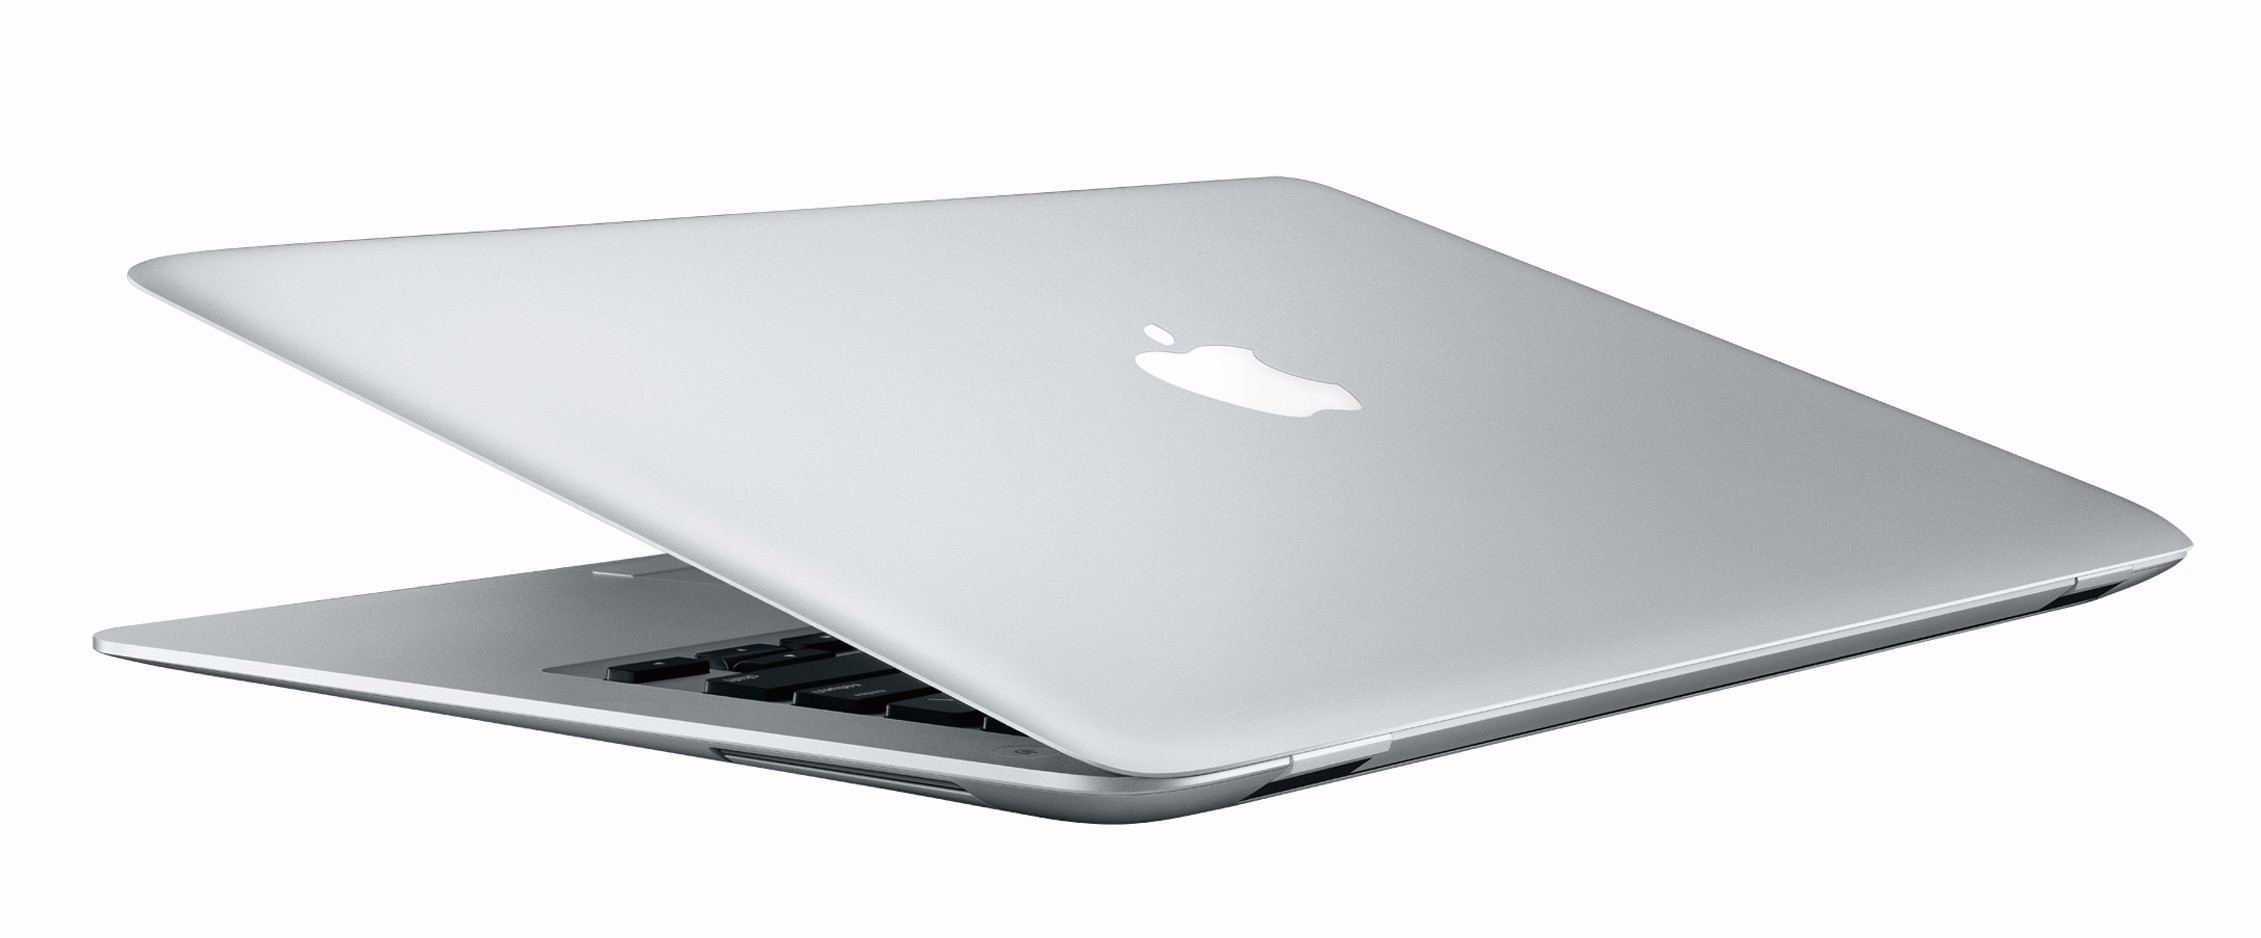 Apple Macbook Air HD Wallpaper